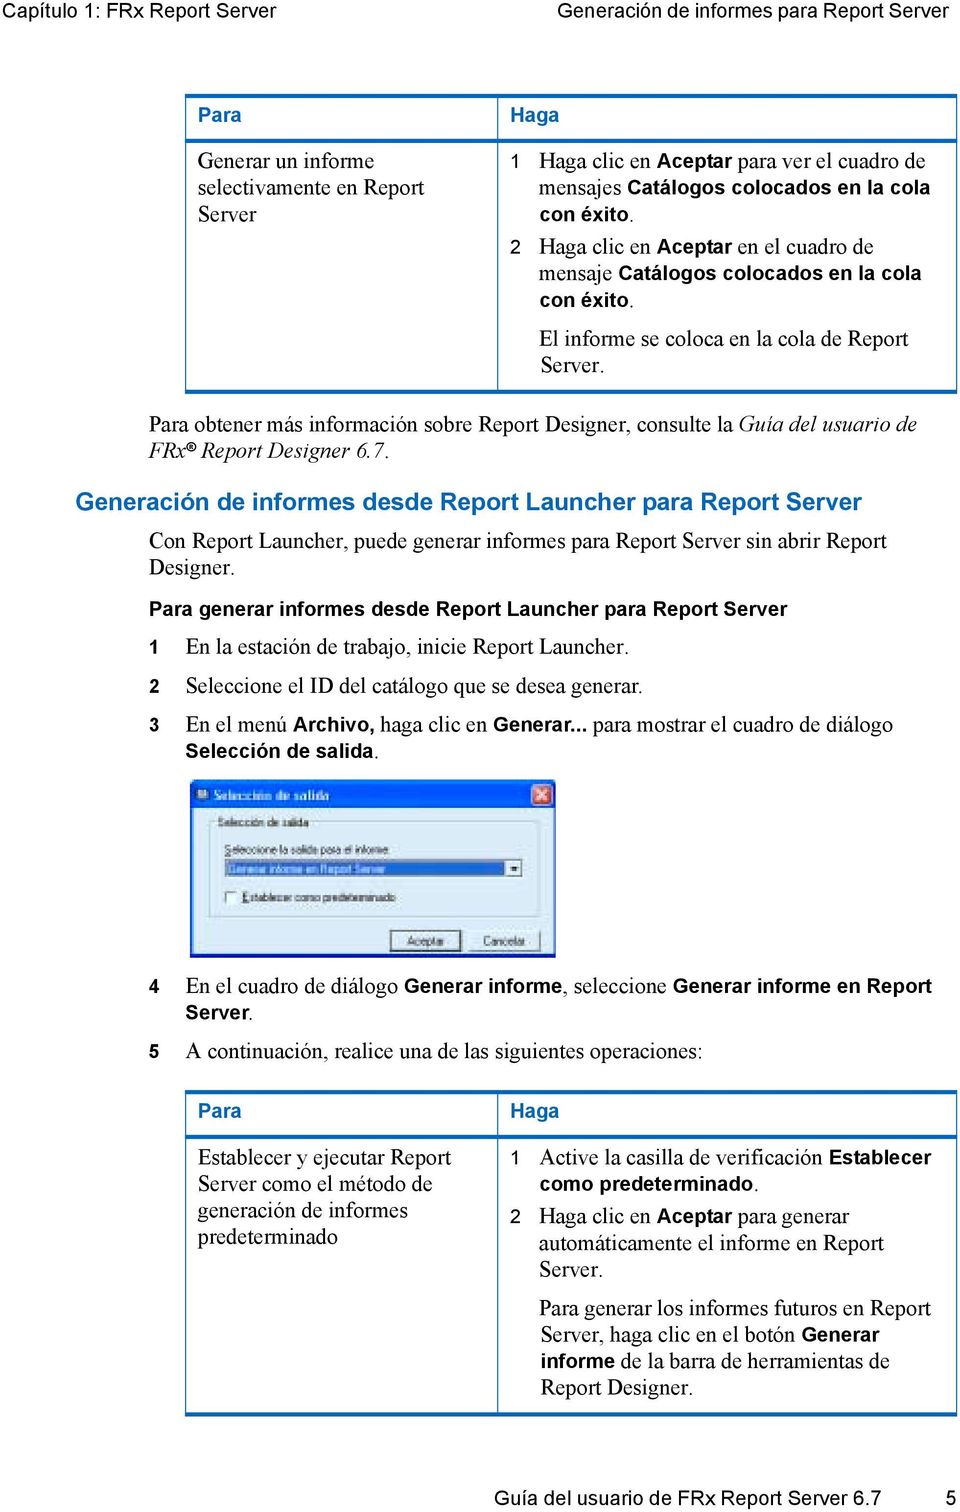 Para obtener más información sobre Report Designer, consulte la Guía del usuario de FRx Report Designer 6.7.